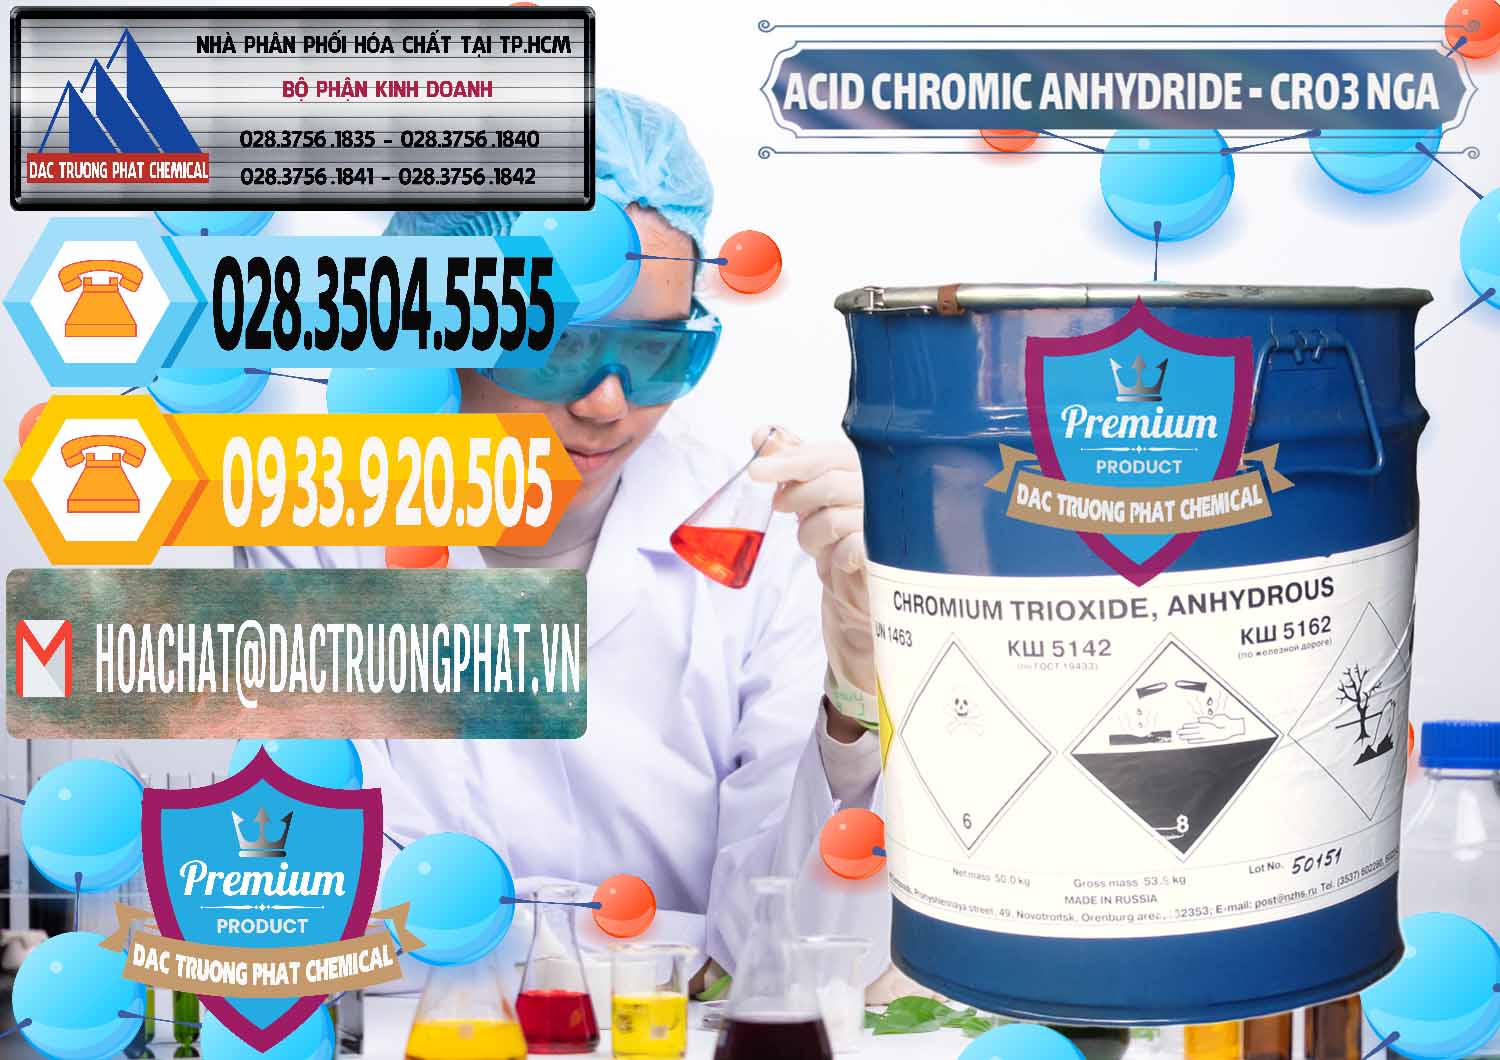 Công ty cung ứng và bán Acid Chromic Anhydride - Cromic CRO3 Nga Russia - 0006 - Đơn vị nhập khẩu ( cung cấp ) hóa chất tại TP.HCM - hoachattayrua.net